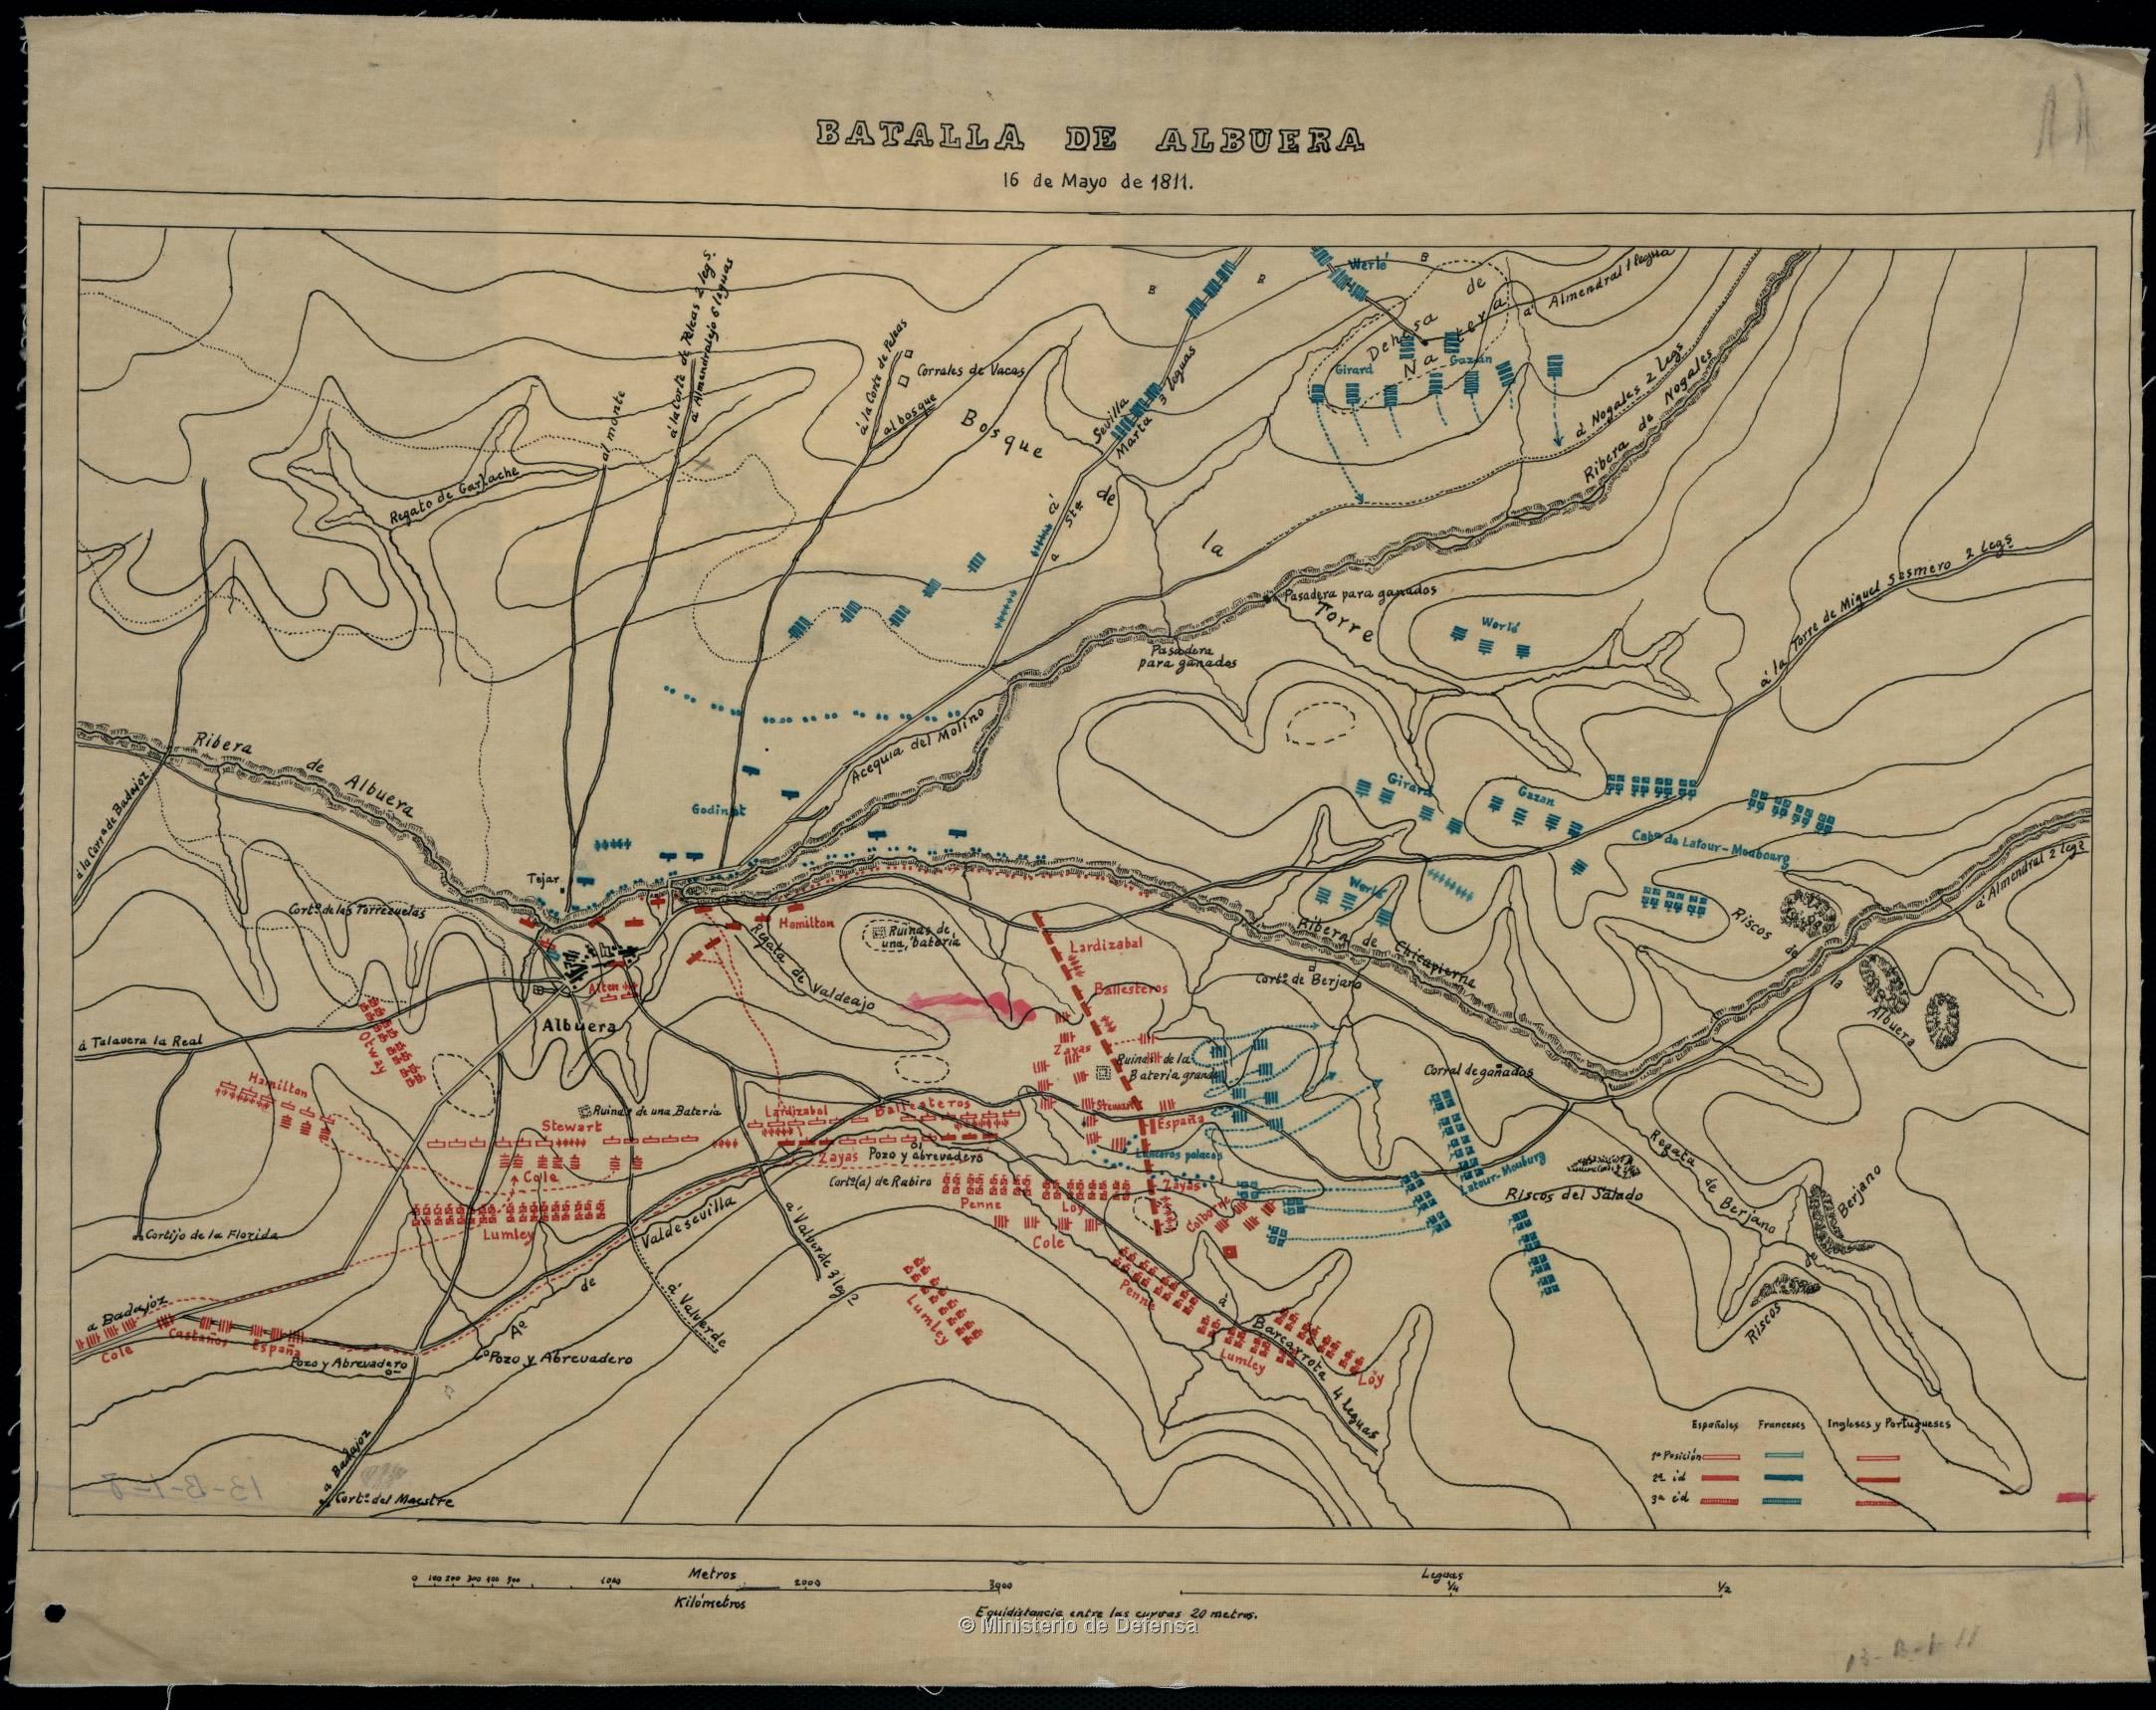 Batalla de la Albuera : 16 de Mayo de 1811